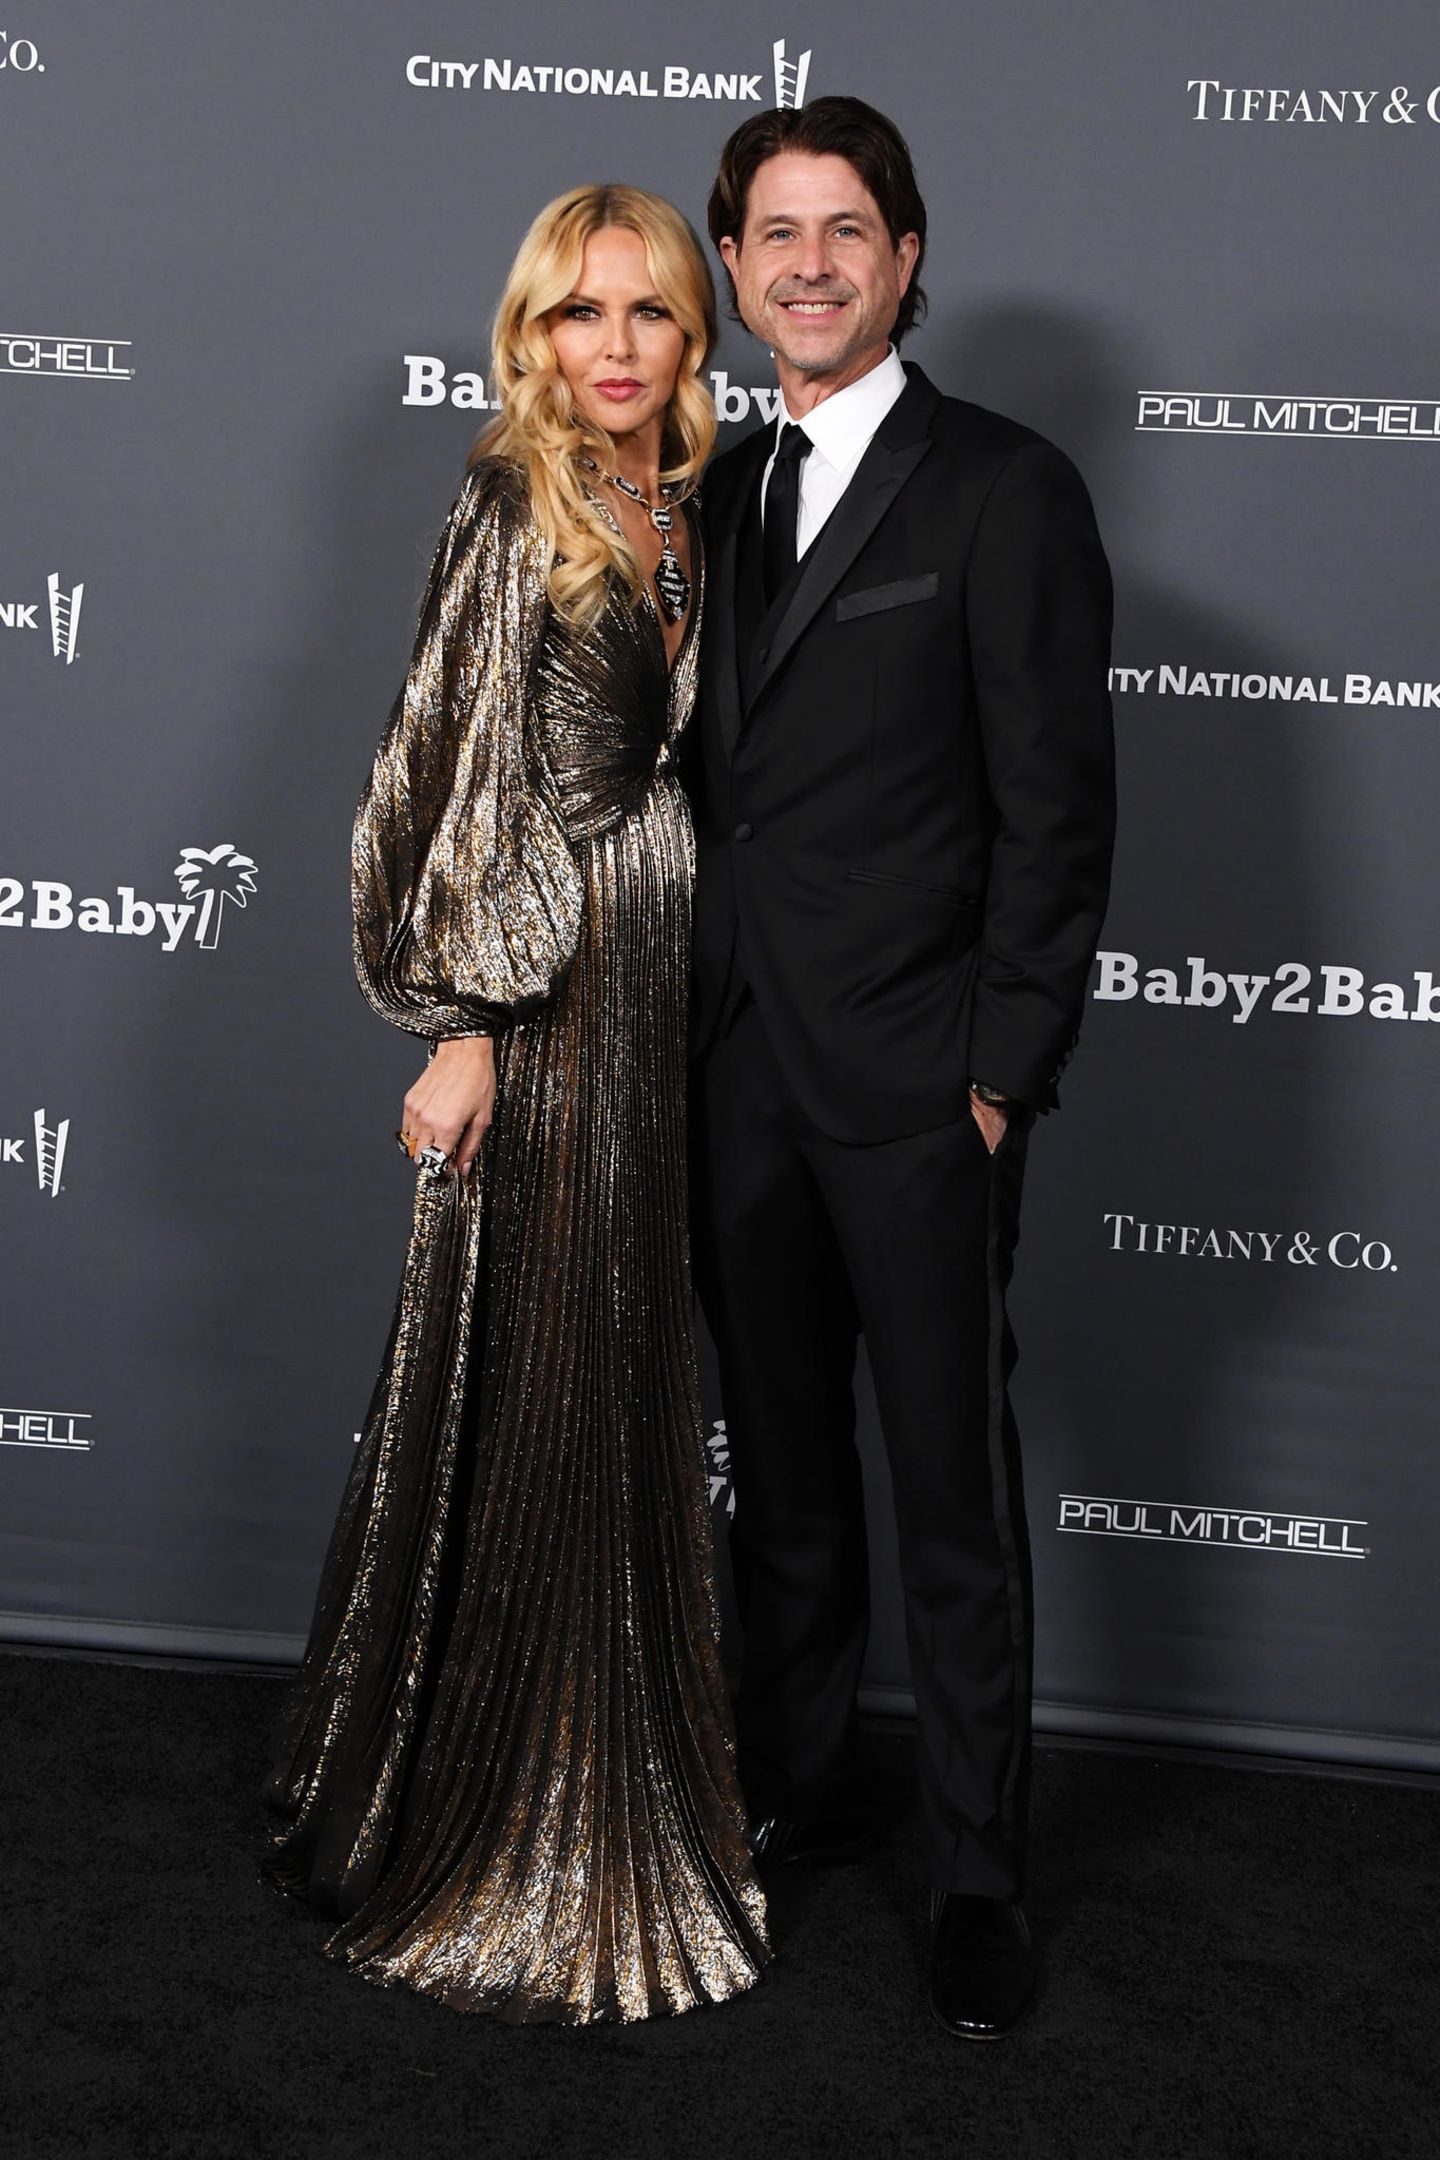 Ähnlich schön glitzert auch Rachel Zoe in ihrem metallishen Glamour-Look mit Falten. Sie hat aber Ehemann Rodger Berman neben sich.